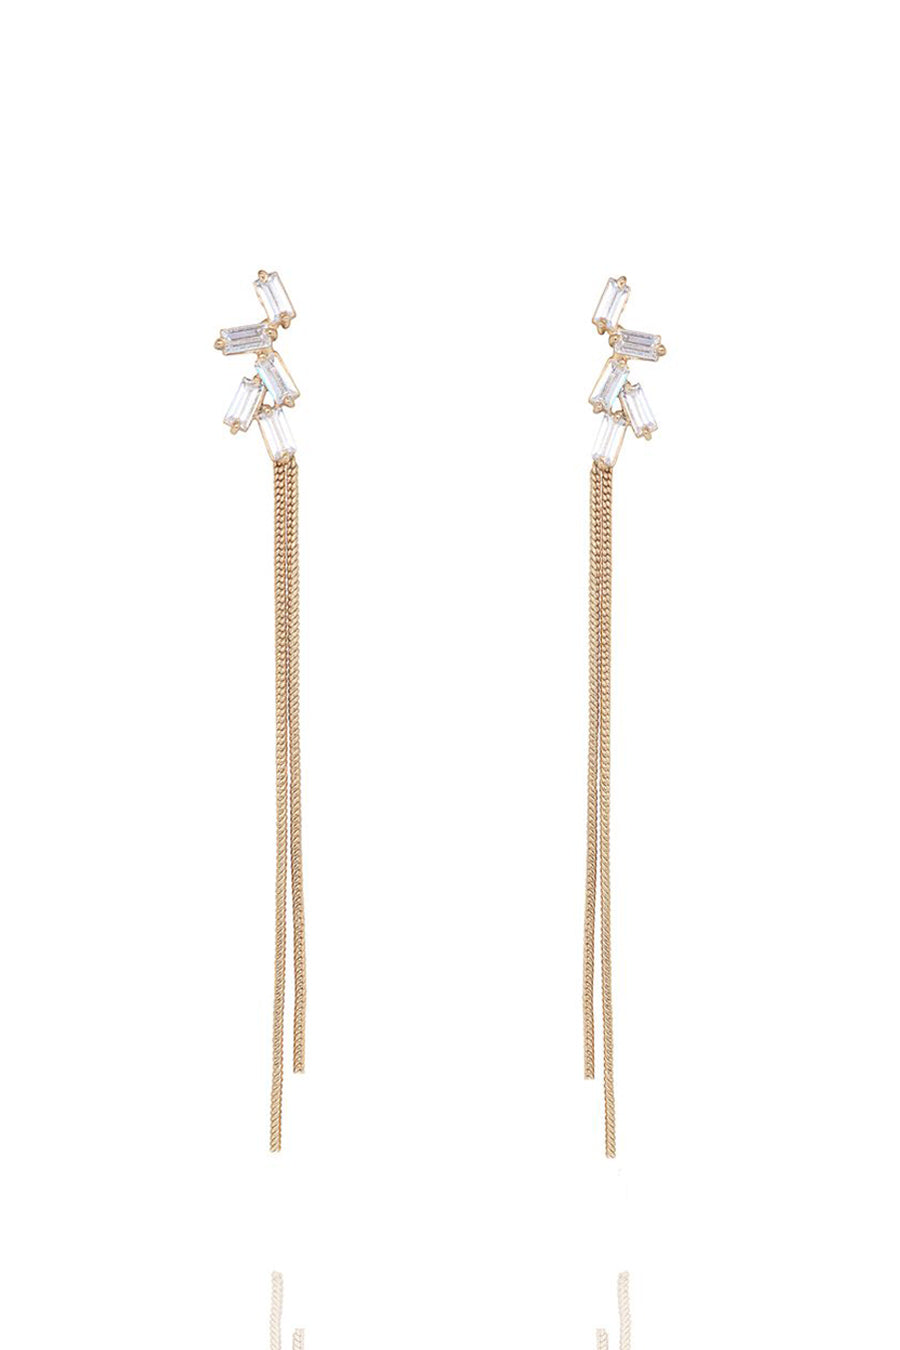 Baguette Zirconia Glamrock Tassel Earrings